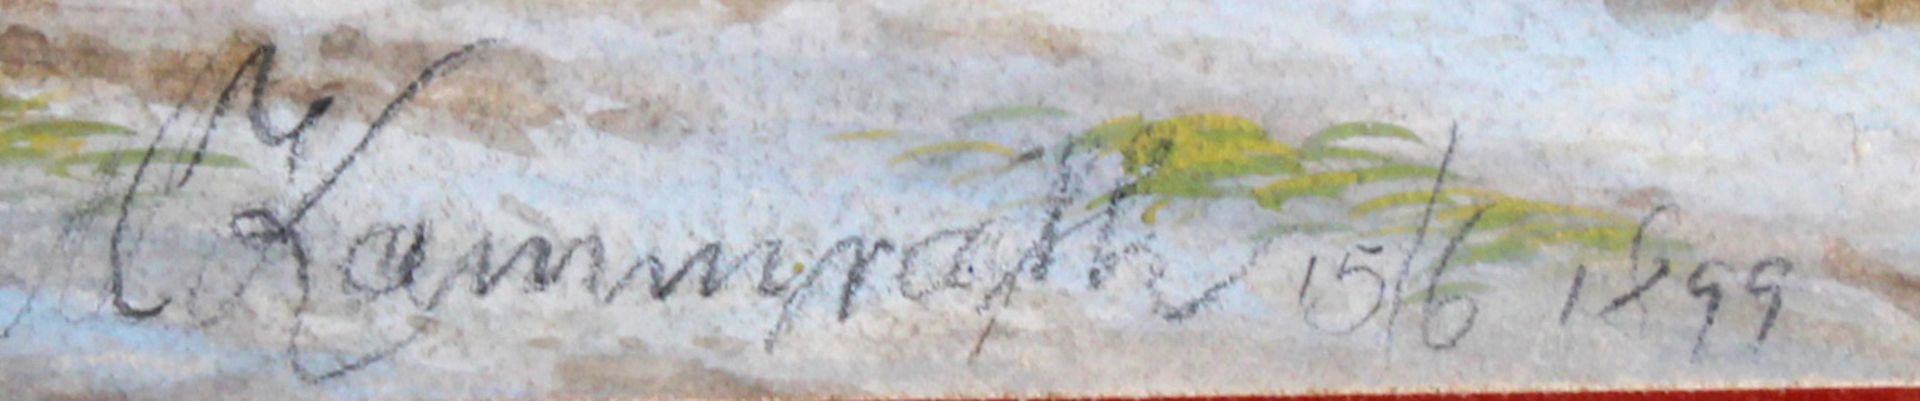 Kammrath, Anna (19./20. Jh.), wohl, "Spielende Kinder am Wasserfall", Gouache, signiert und datiert - Image 3 of 3